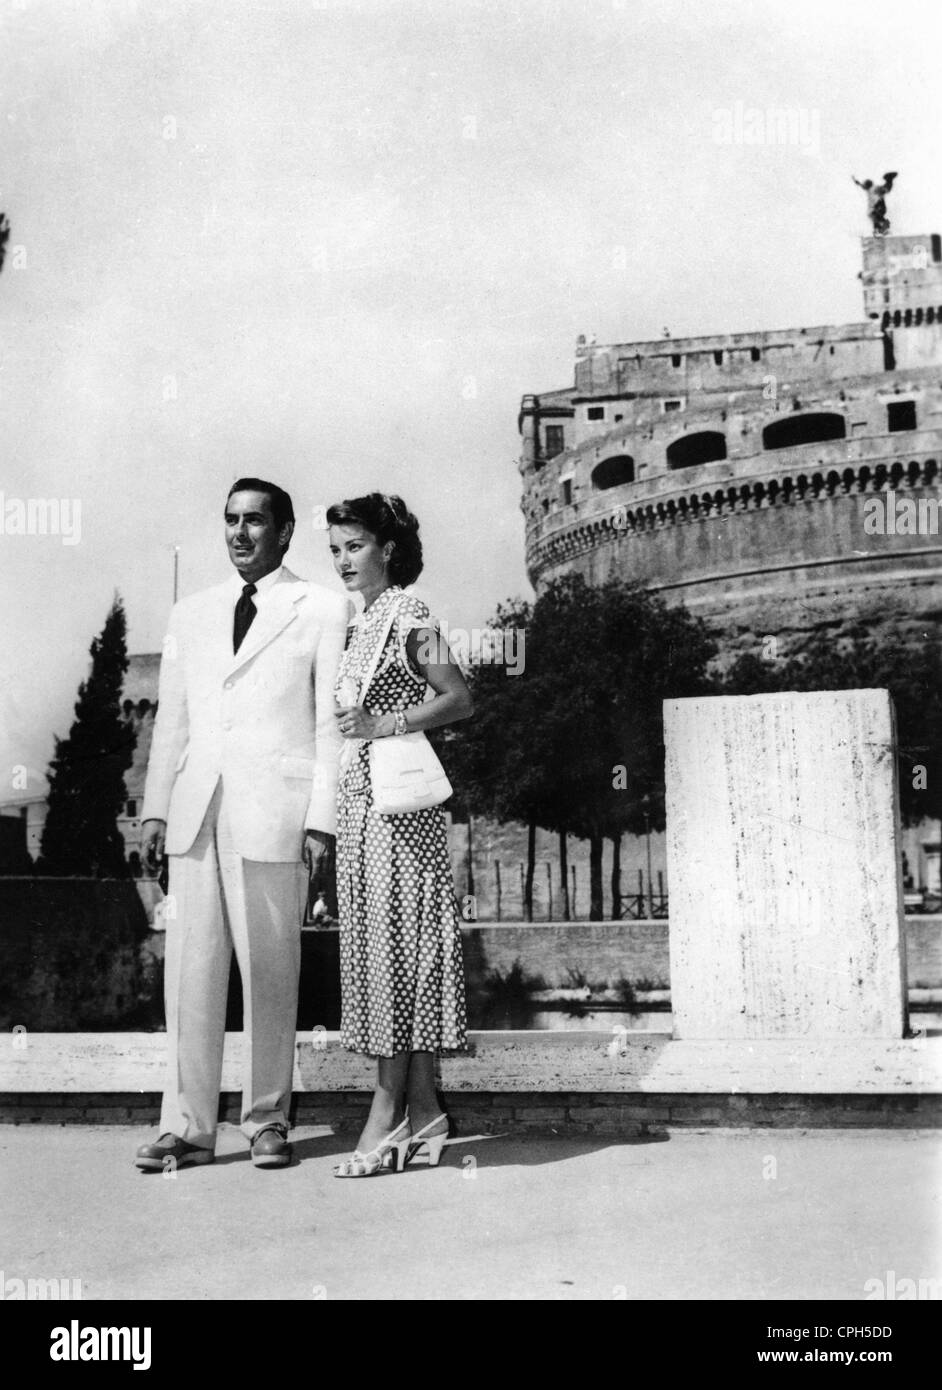 Christian, Linda, 13.11.1923 - 22.7.2011, attrice messicana, full length, con attore Tyrone Power, durante una visita a Roma, 24.8.1948, Foto Stock